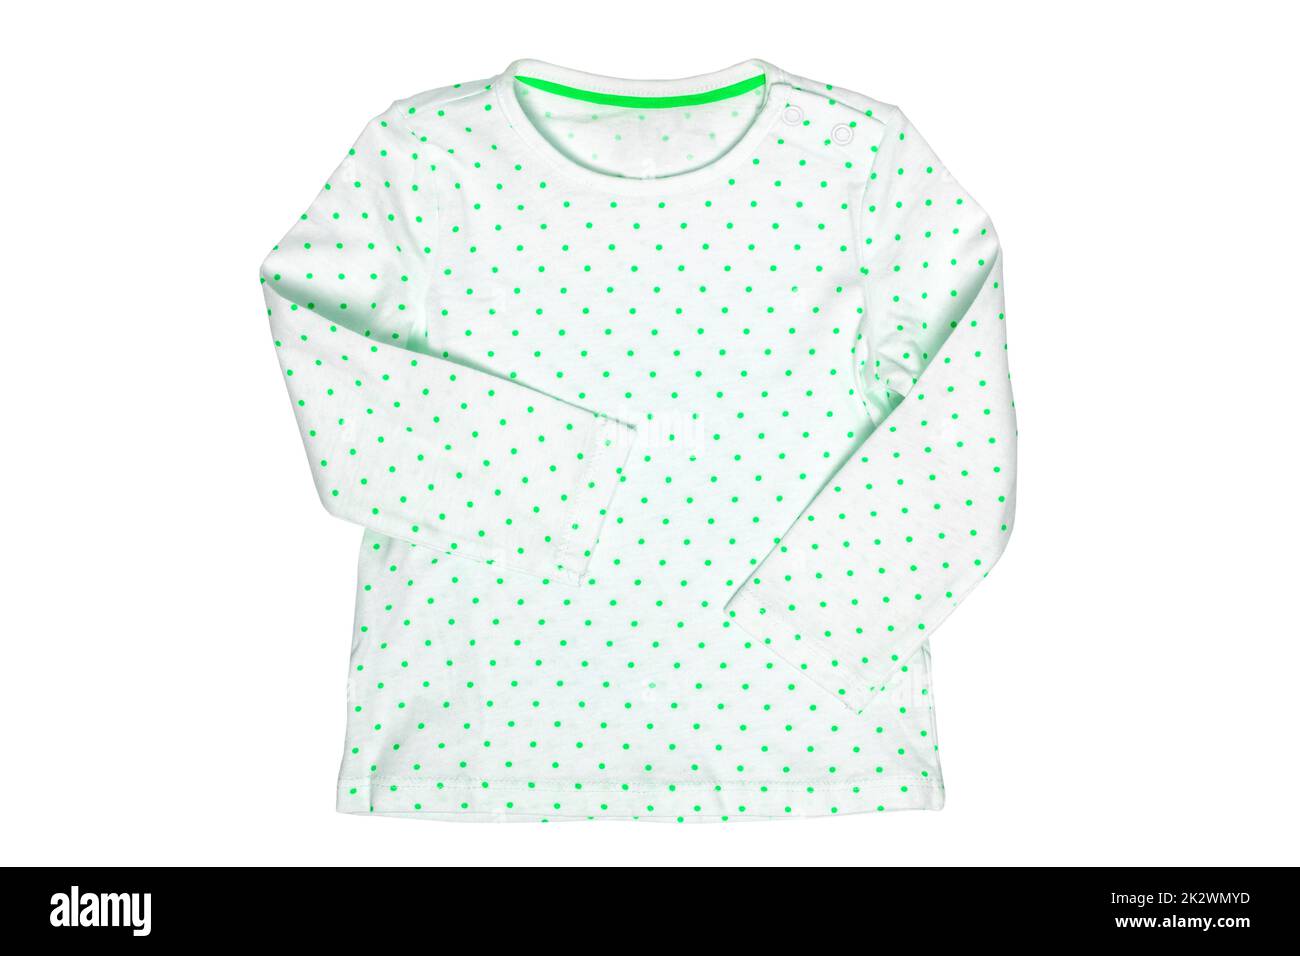 Hemd für Kinder. Nahaufnahme eines weißen T-Shirts mit grünen Polka-Punkten auf weißem Hintergrund. Frühlings- und Sommermode für Kinder. Beschneidungspfad. Stockfoto